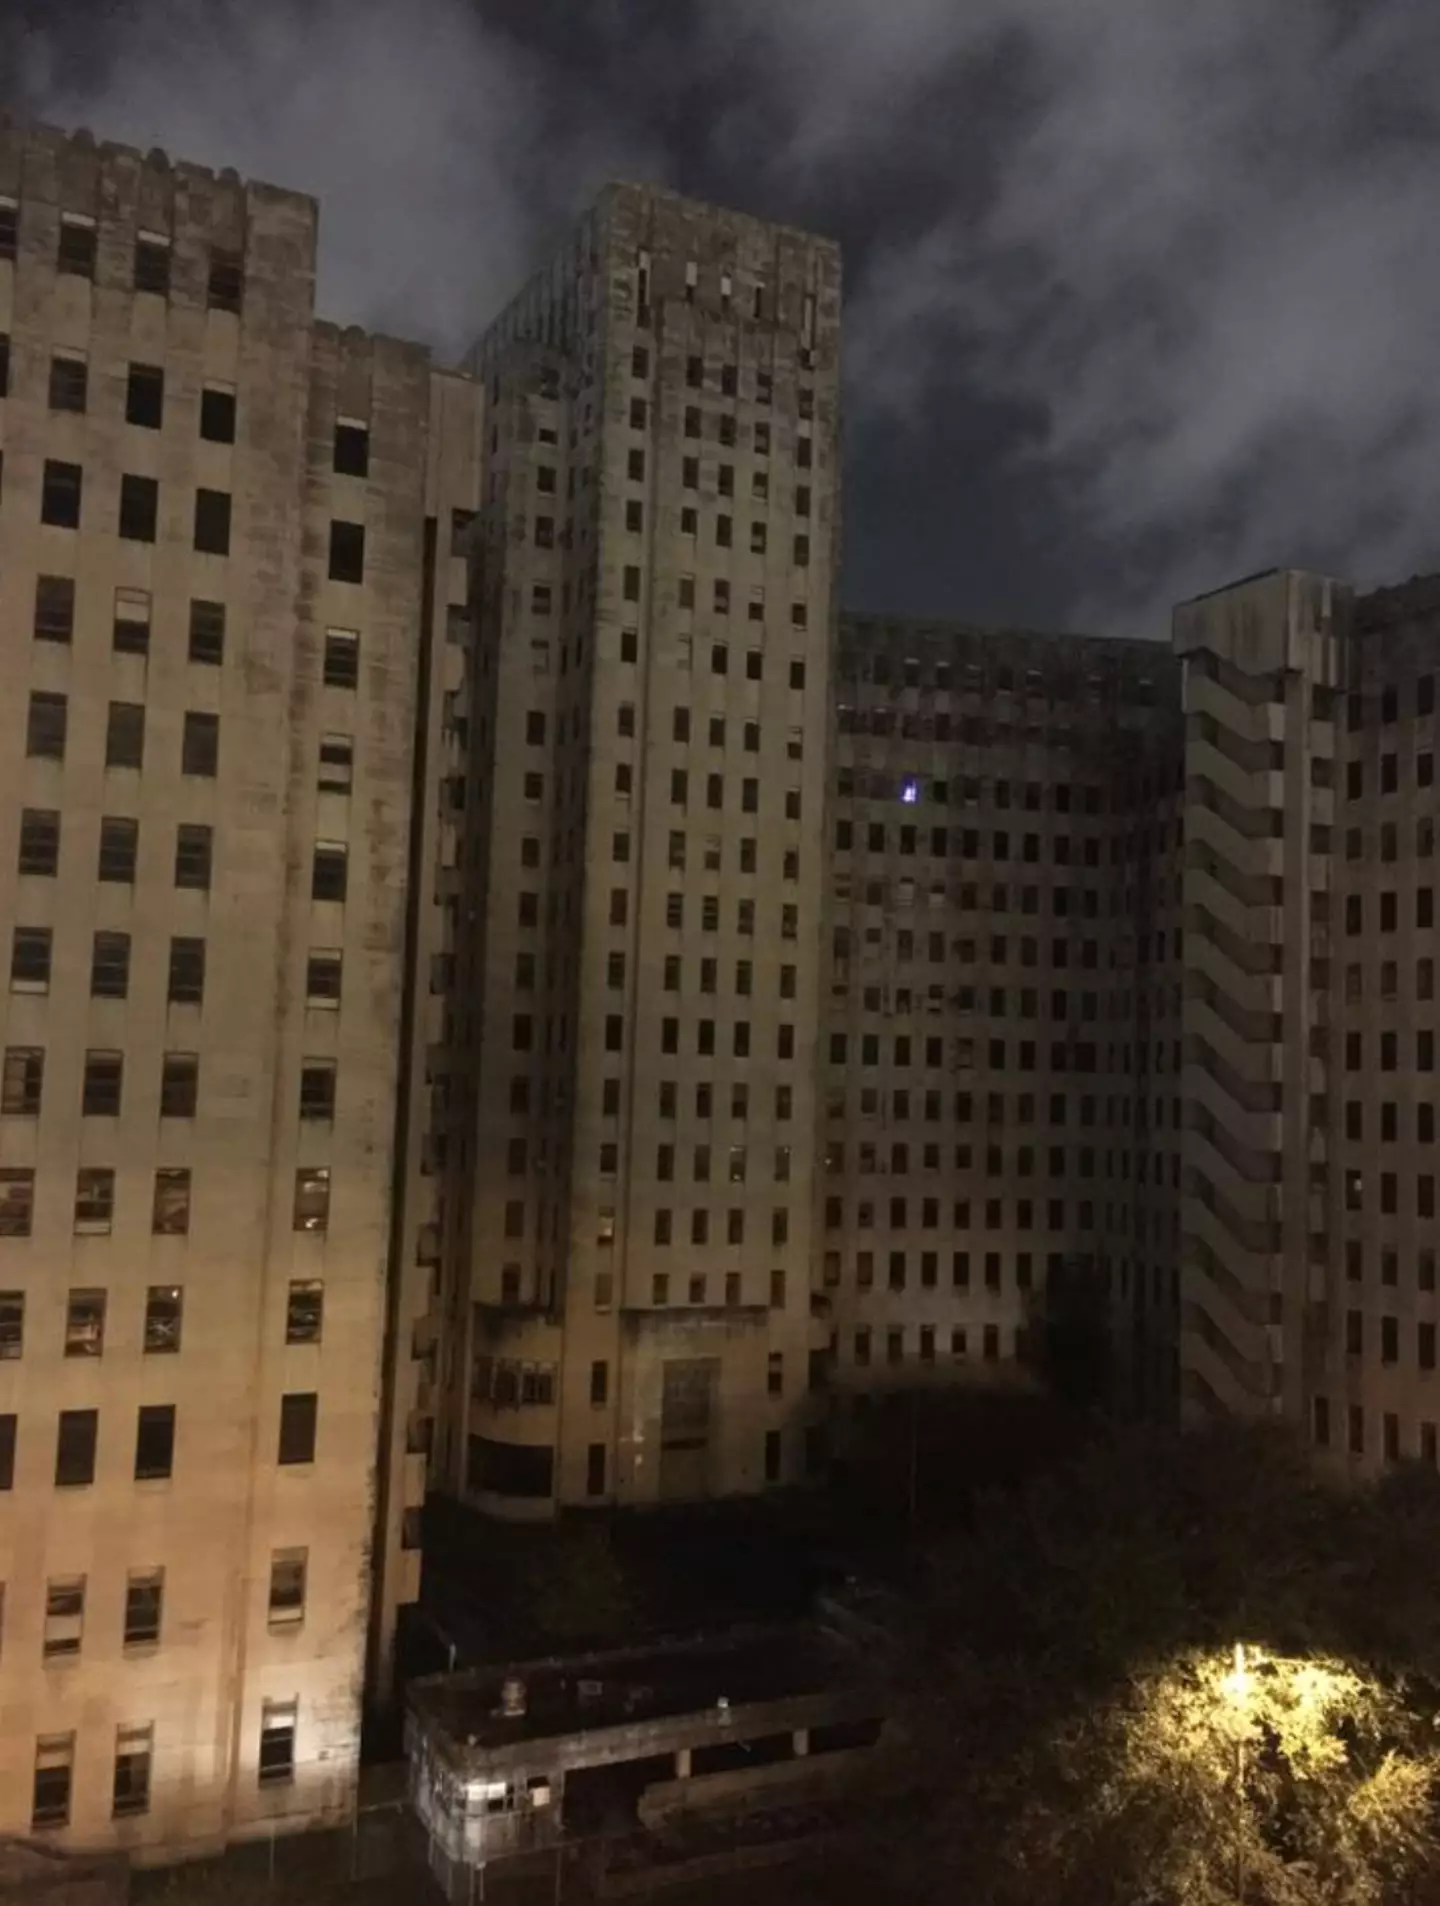 Mistério de luz acesa em hospital abandonado no meio da noite é uma das ocorrências mais assustadoras não resolvidas